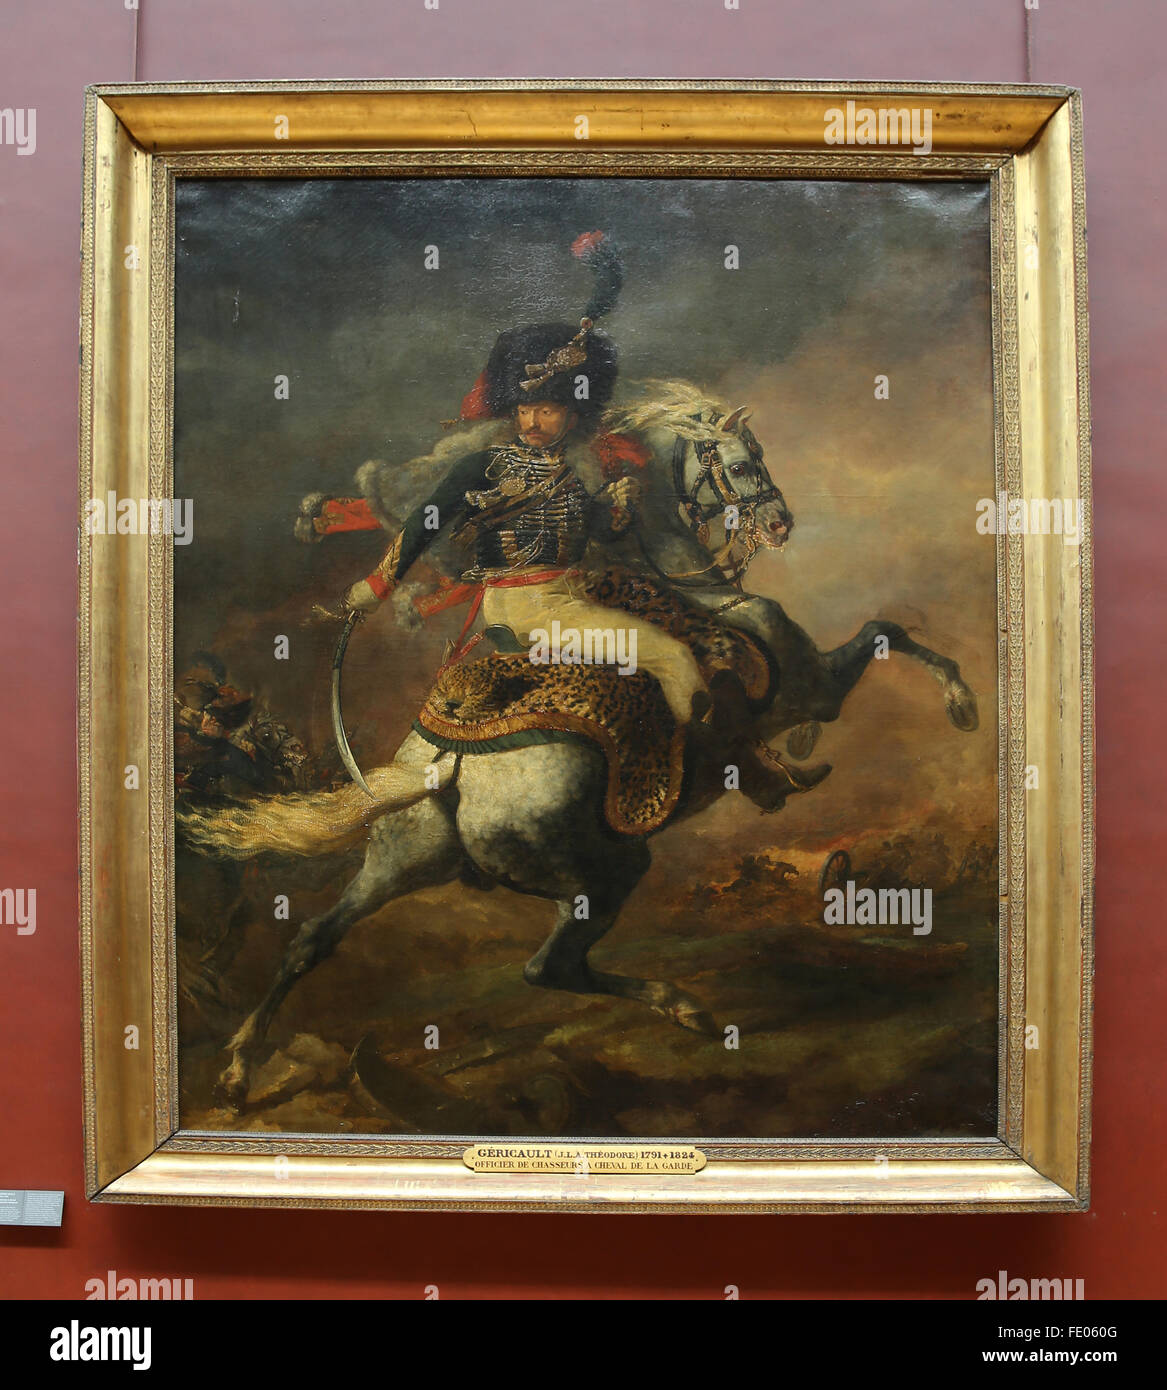 Le Chasseur de charge, en 1812 par le peintre français Eugène Delacroix (1798-1863). Huile sur toile. Musée du Louvre, Paris, France. Banque D'Images